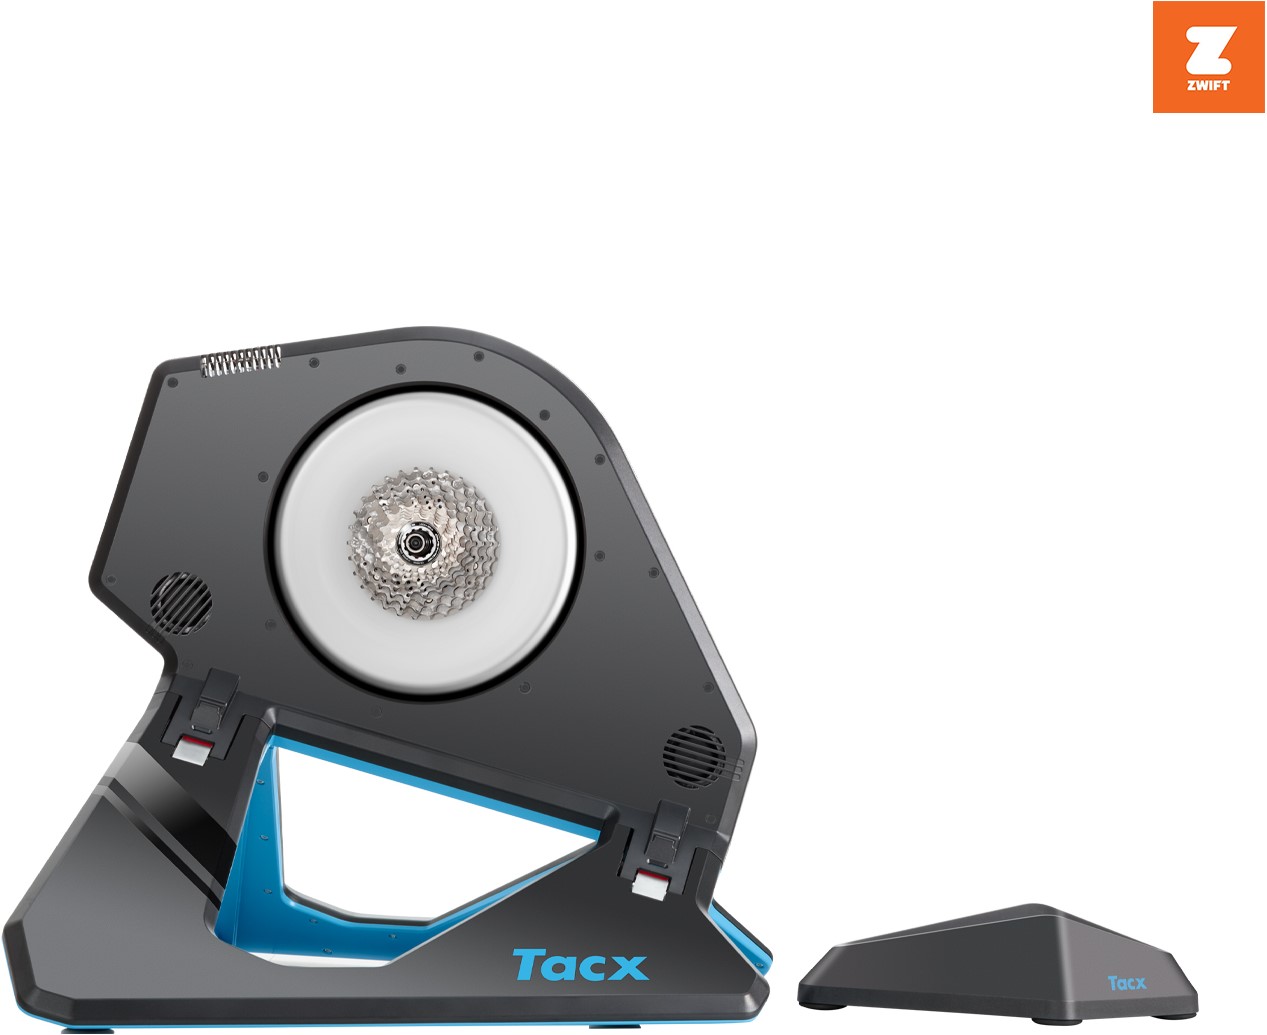 stil maak je geïrriteerd Bouwen Tacx Neo 2T Smart Fietstrainer - Gratis trainingsschema | Fitwinkel.nl